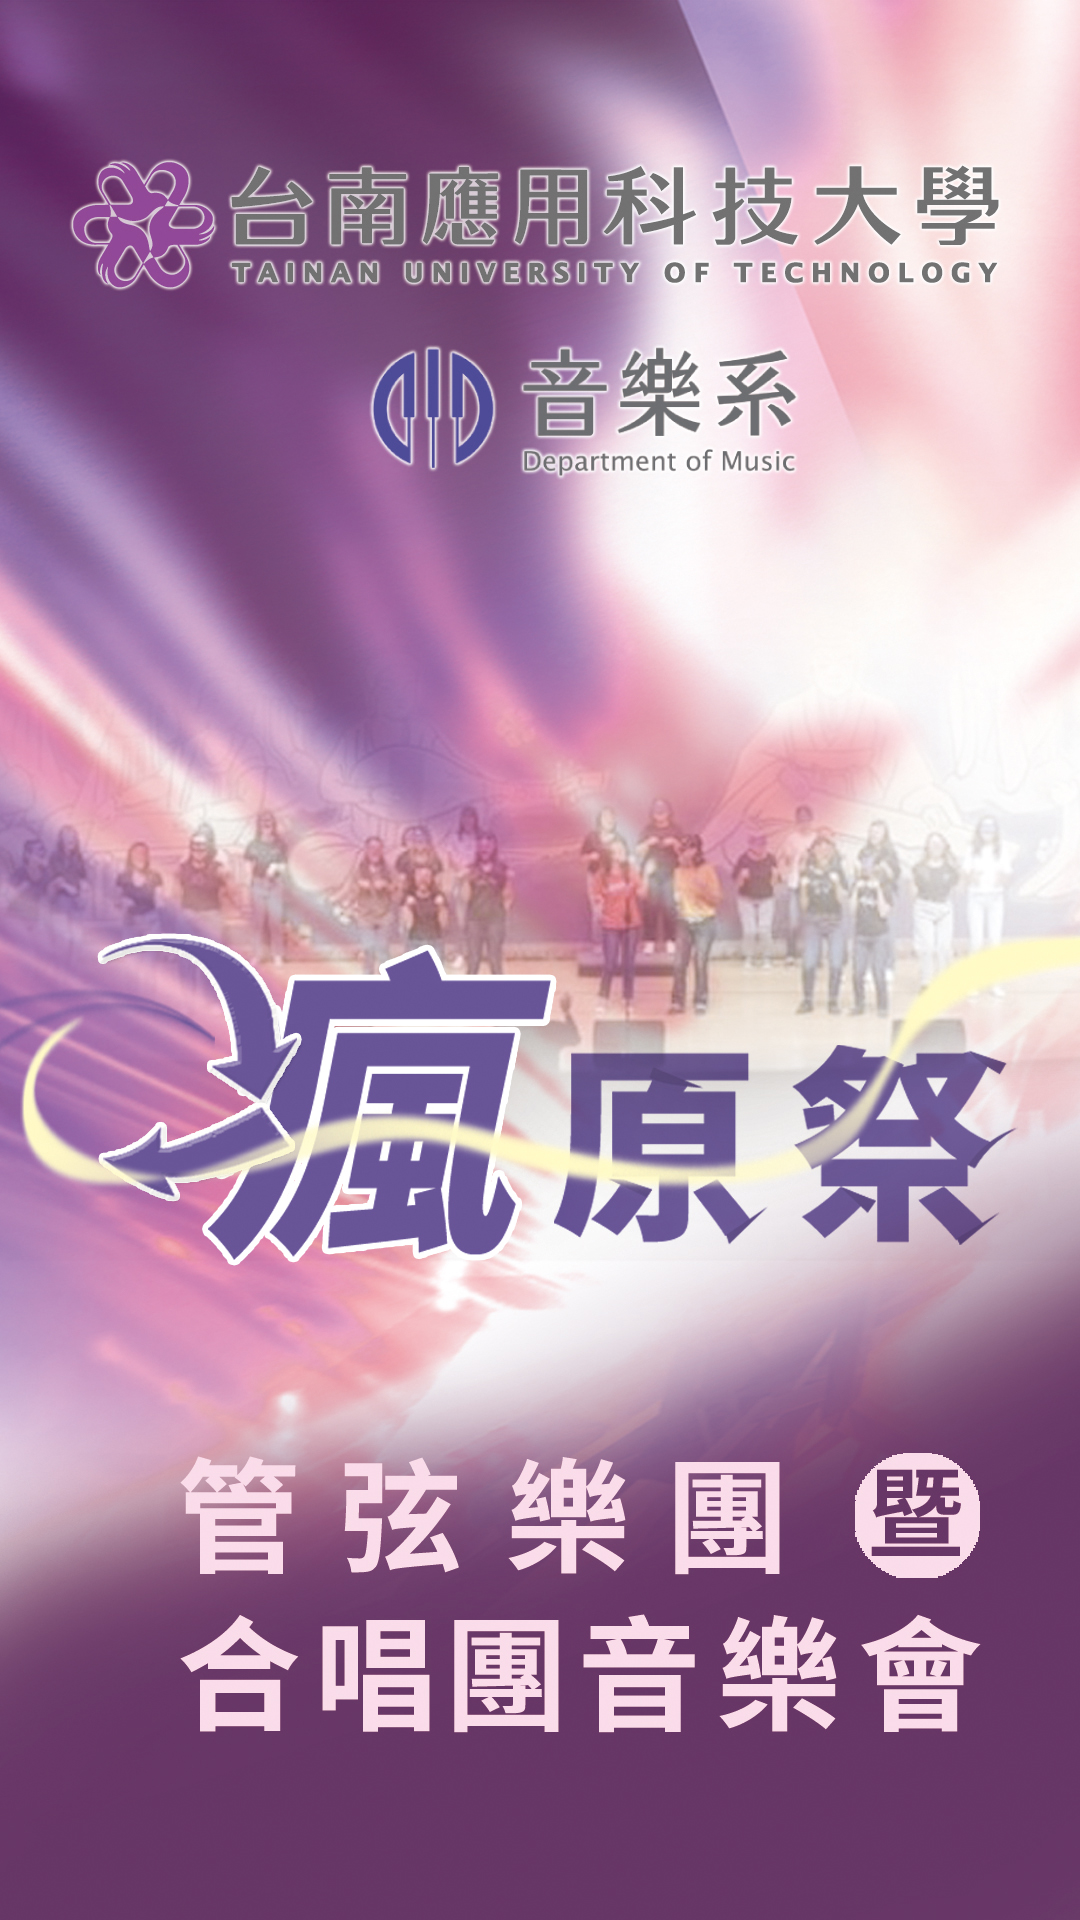 《瘋原祭》台南應用科技大學音樂系管弦樂團暨合唱團聯合音樂會